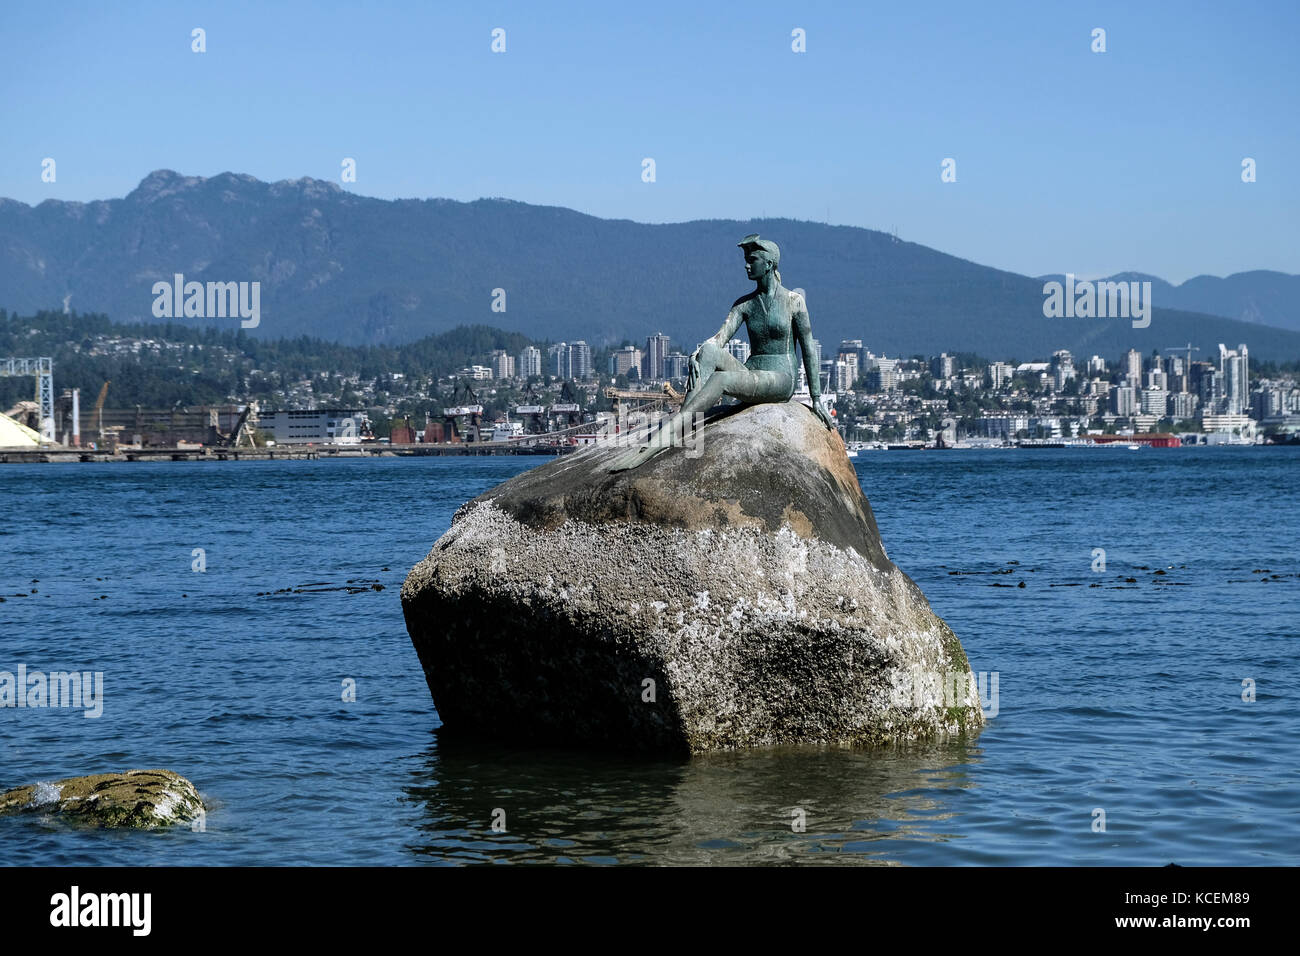 La ragazza di una muta, una scultura in bronzo di Elek Imredy che siede sul lato acqua di Stanley Park a Vancouver, British Columbia, Canada Foto Stock